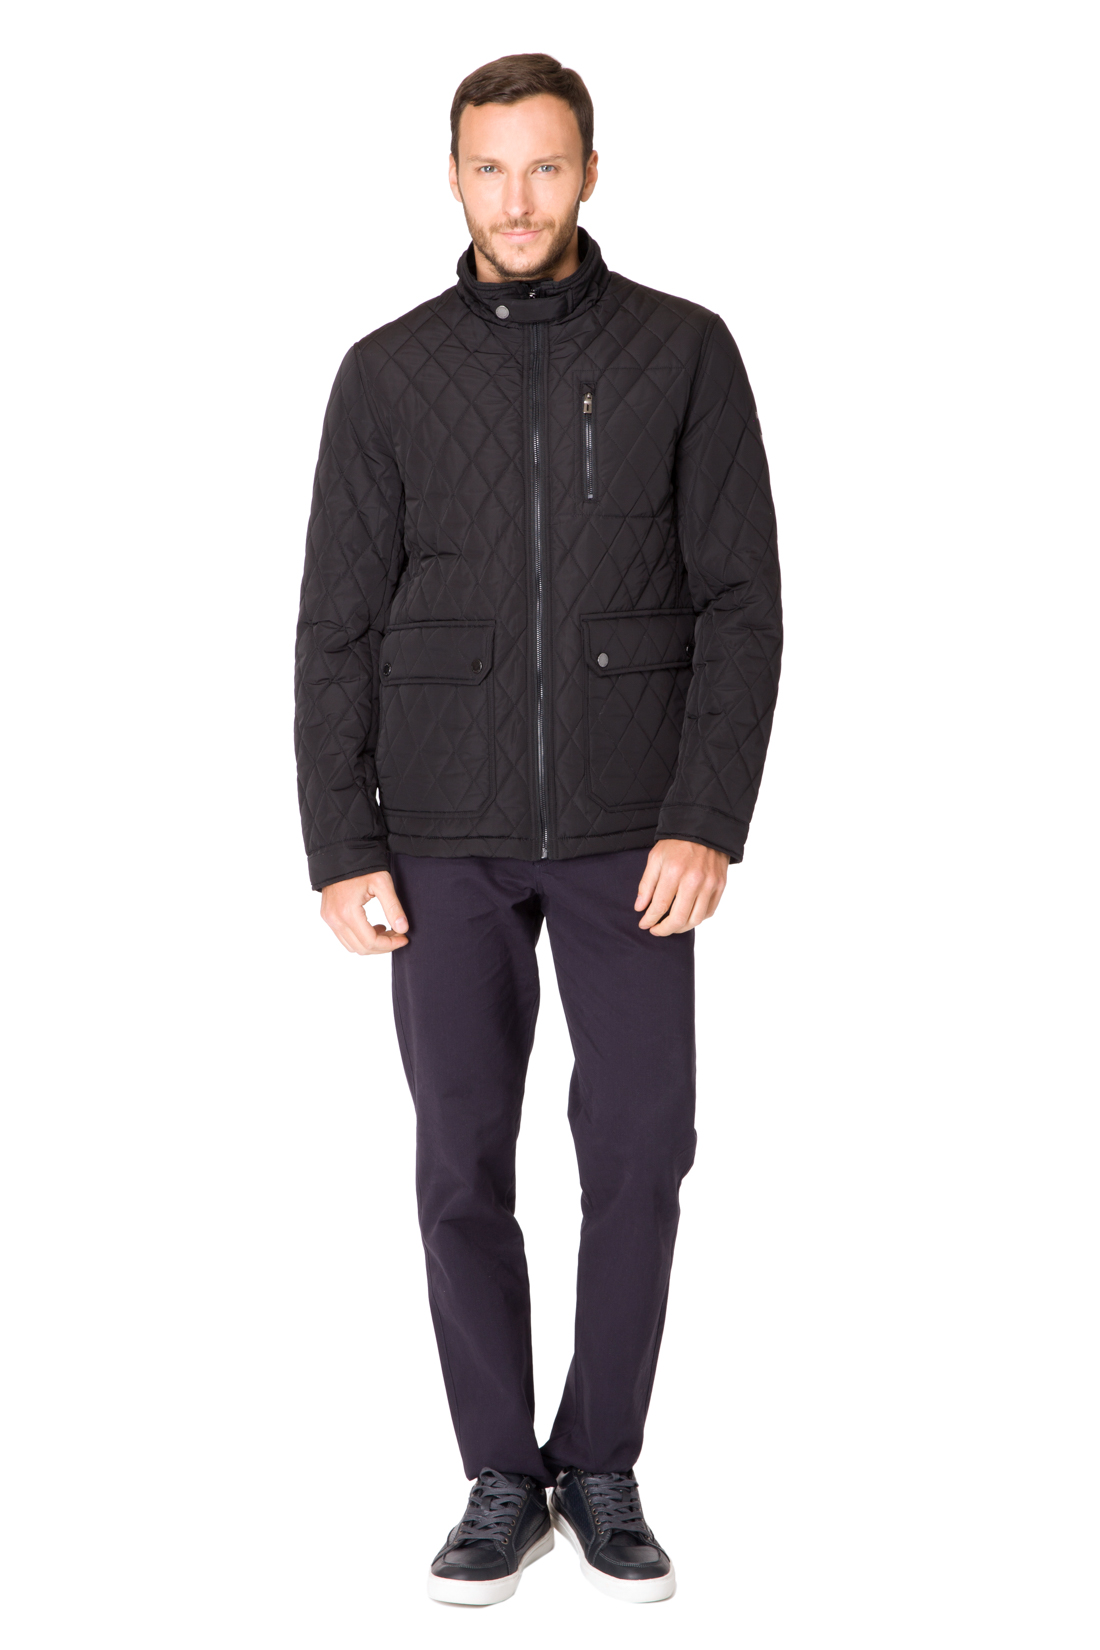 Стёганая куртка с воротником-стойкой (арт. baon B537017), размер M, цвет черный Стёганая куртка с воротником-стойкой (арт. baon B537017) - фото 5